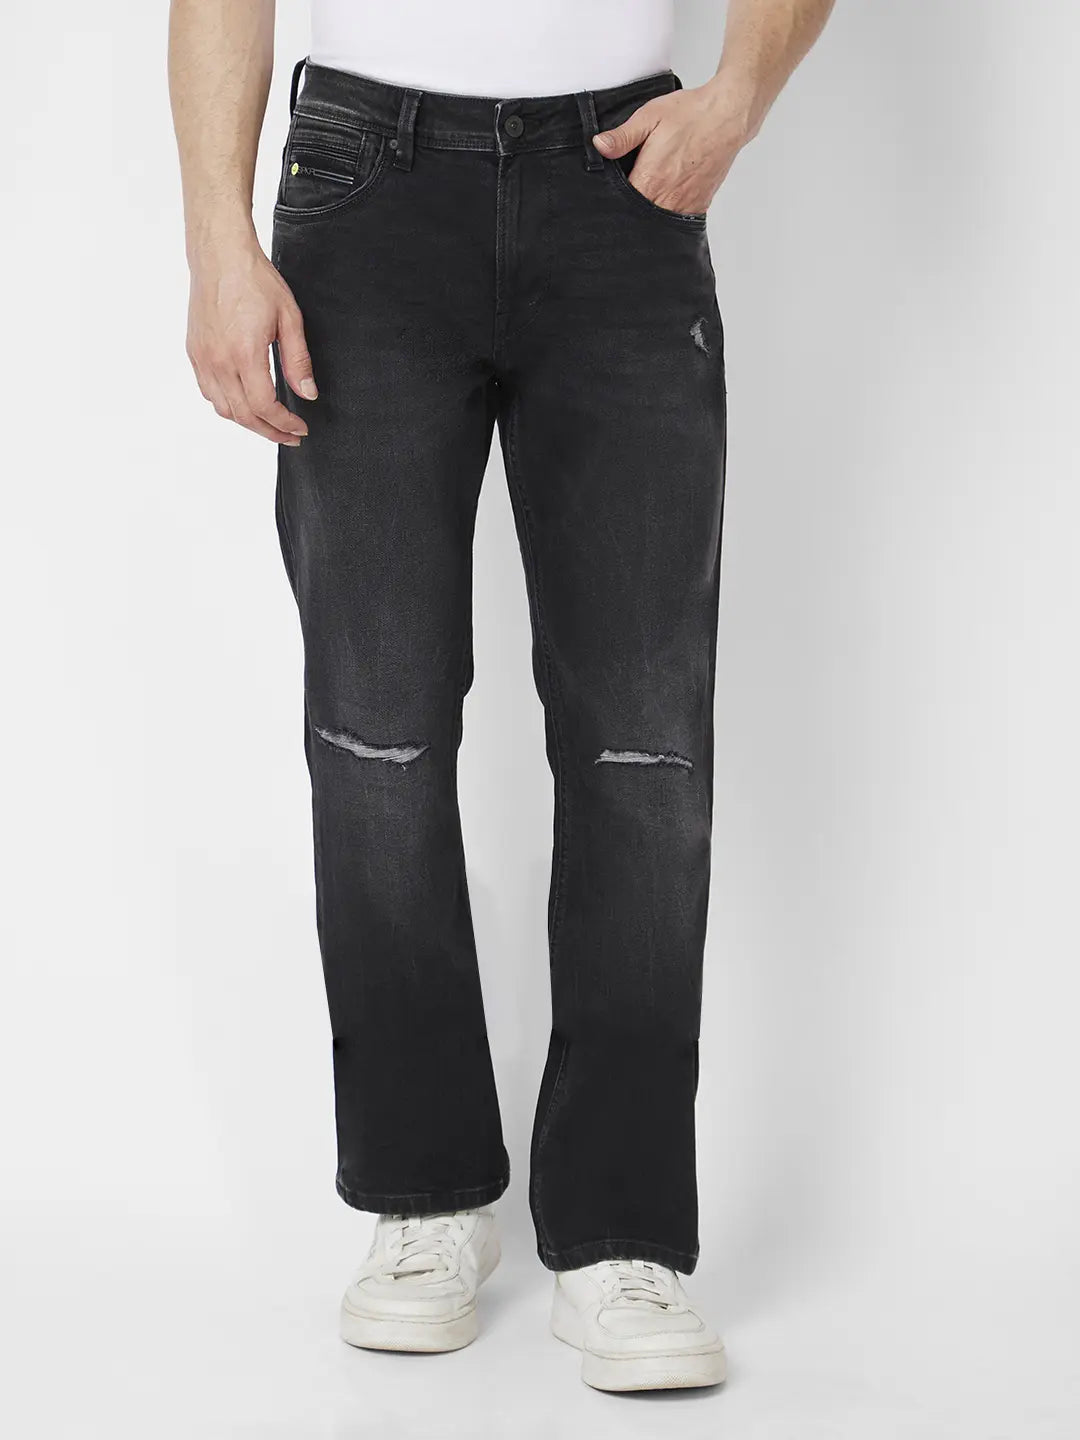 Spykar Men Carbon Black Cotton Comfort Fit Regular Length Knee Slit Mid Rise Jeans (Rafter)